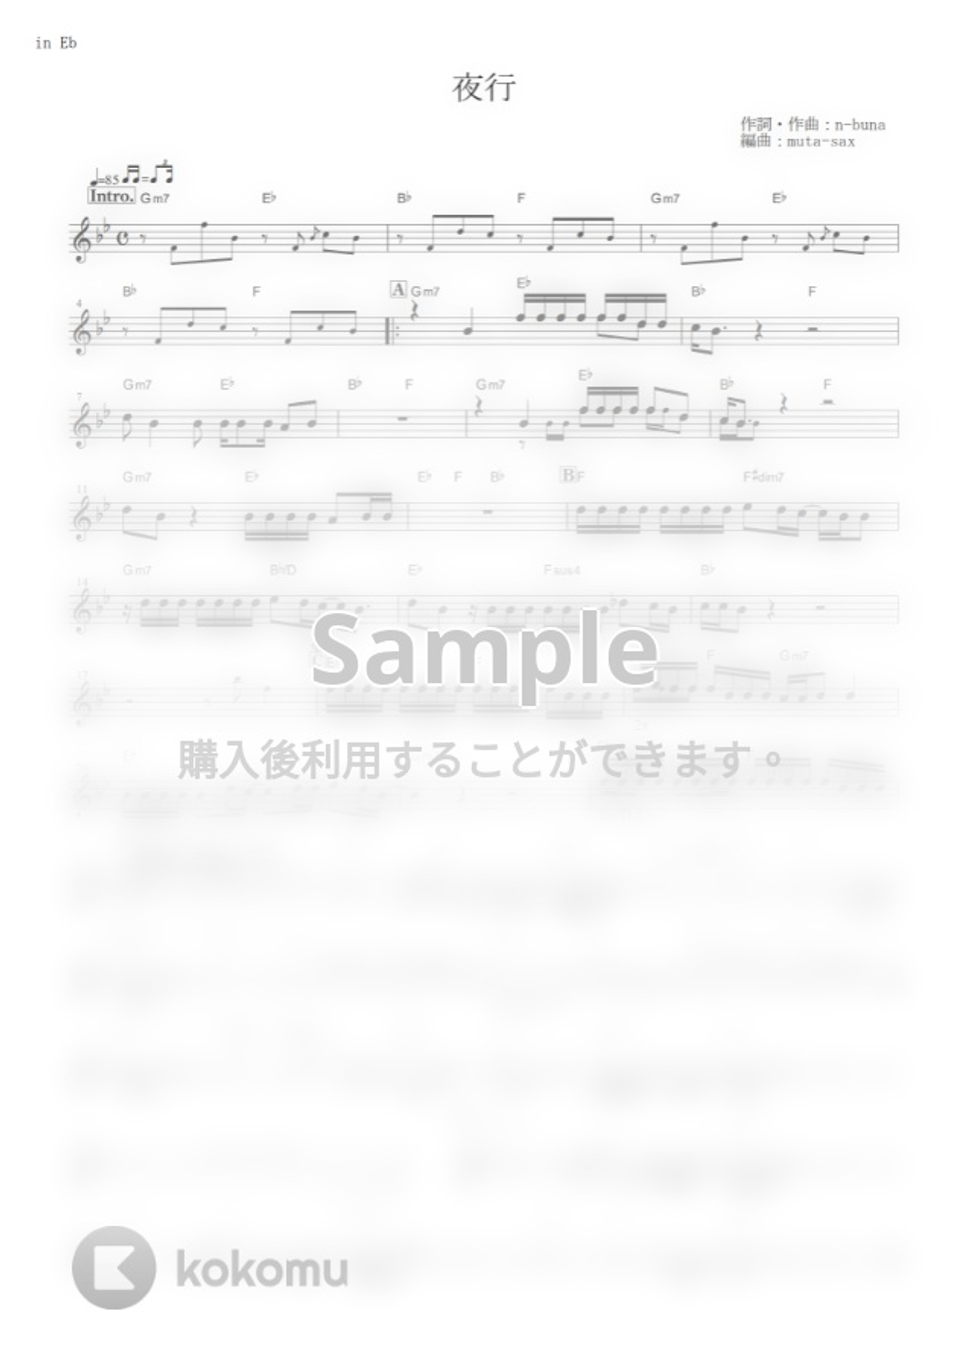 ヨルシカ - 夜行 (『泣きたい私は猫をかぶる』 / in Eb) by muta-sax